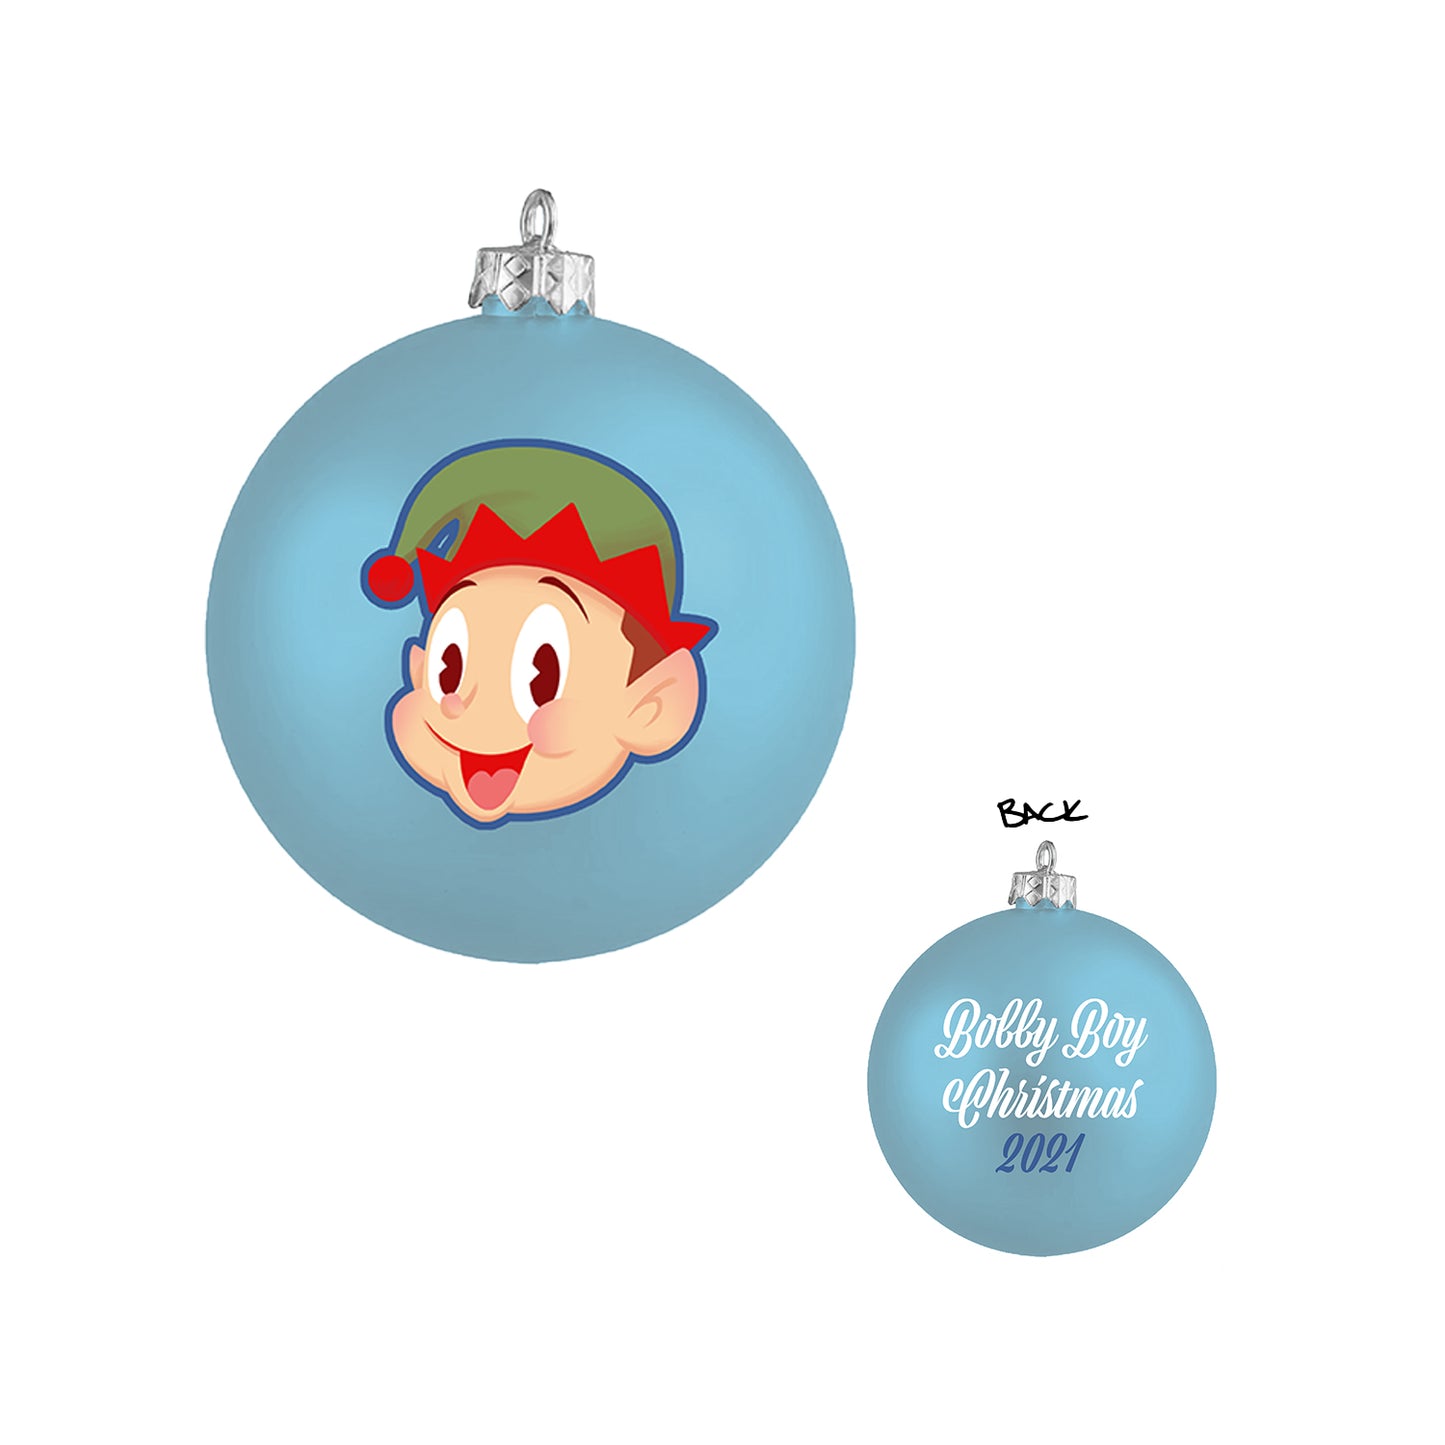 Bobby Boy Holiday Ornament Set